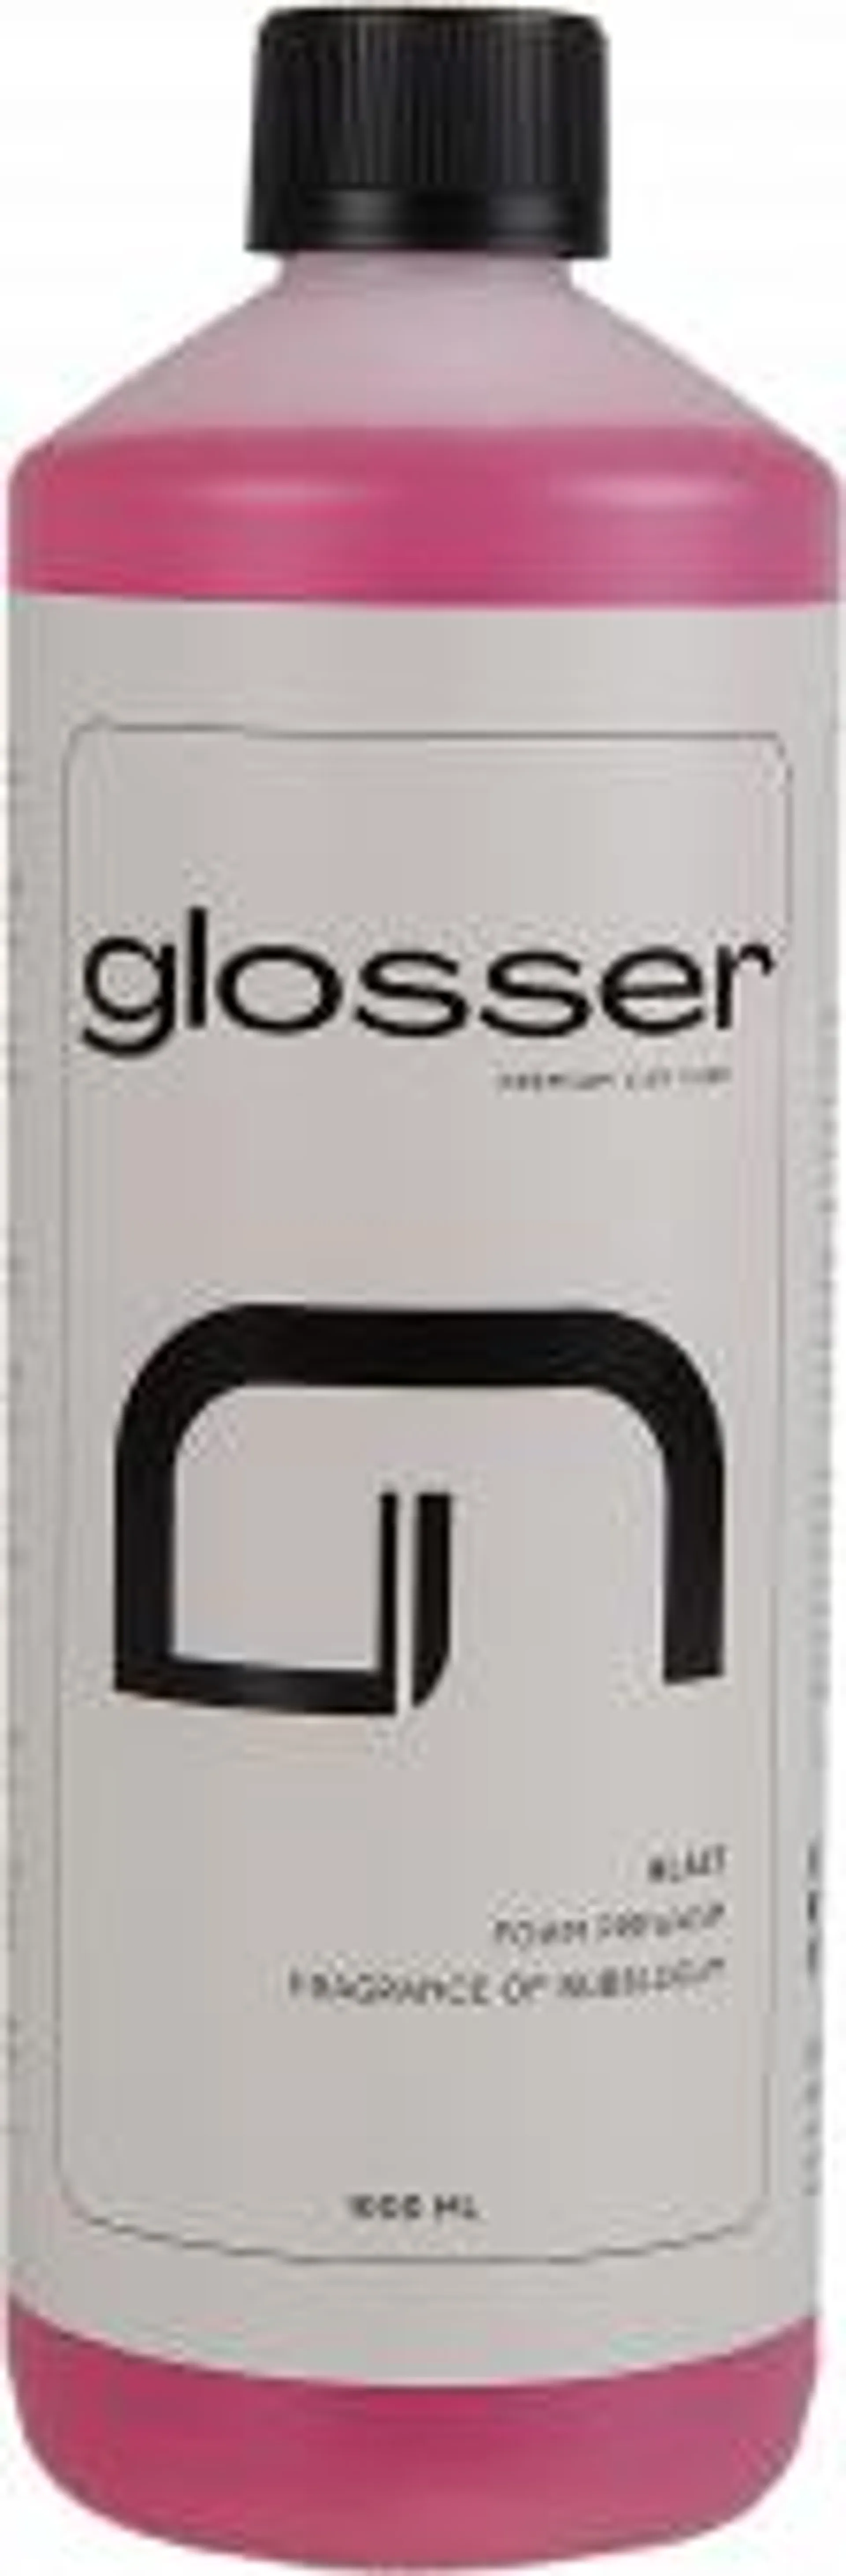 Glosser Blast Foam Prewash - Förtvättsmedel/Alkalisk avfettning 500 ml